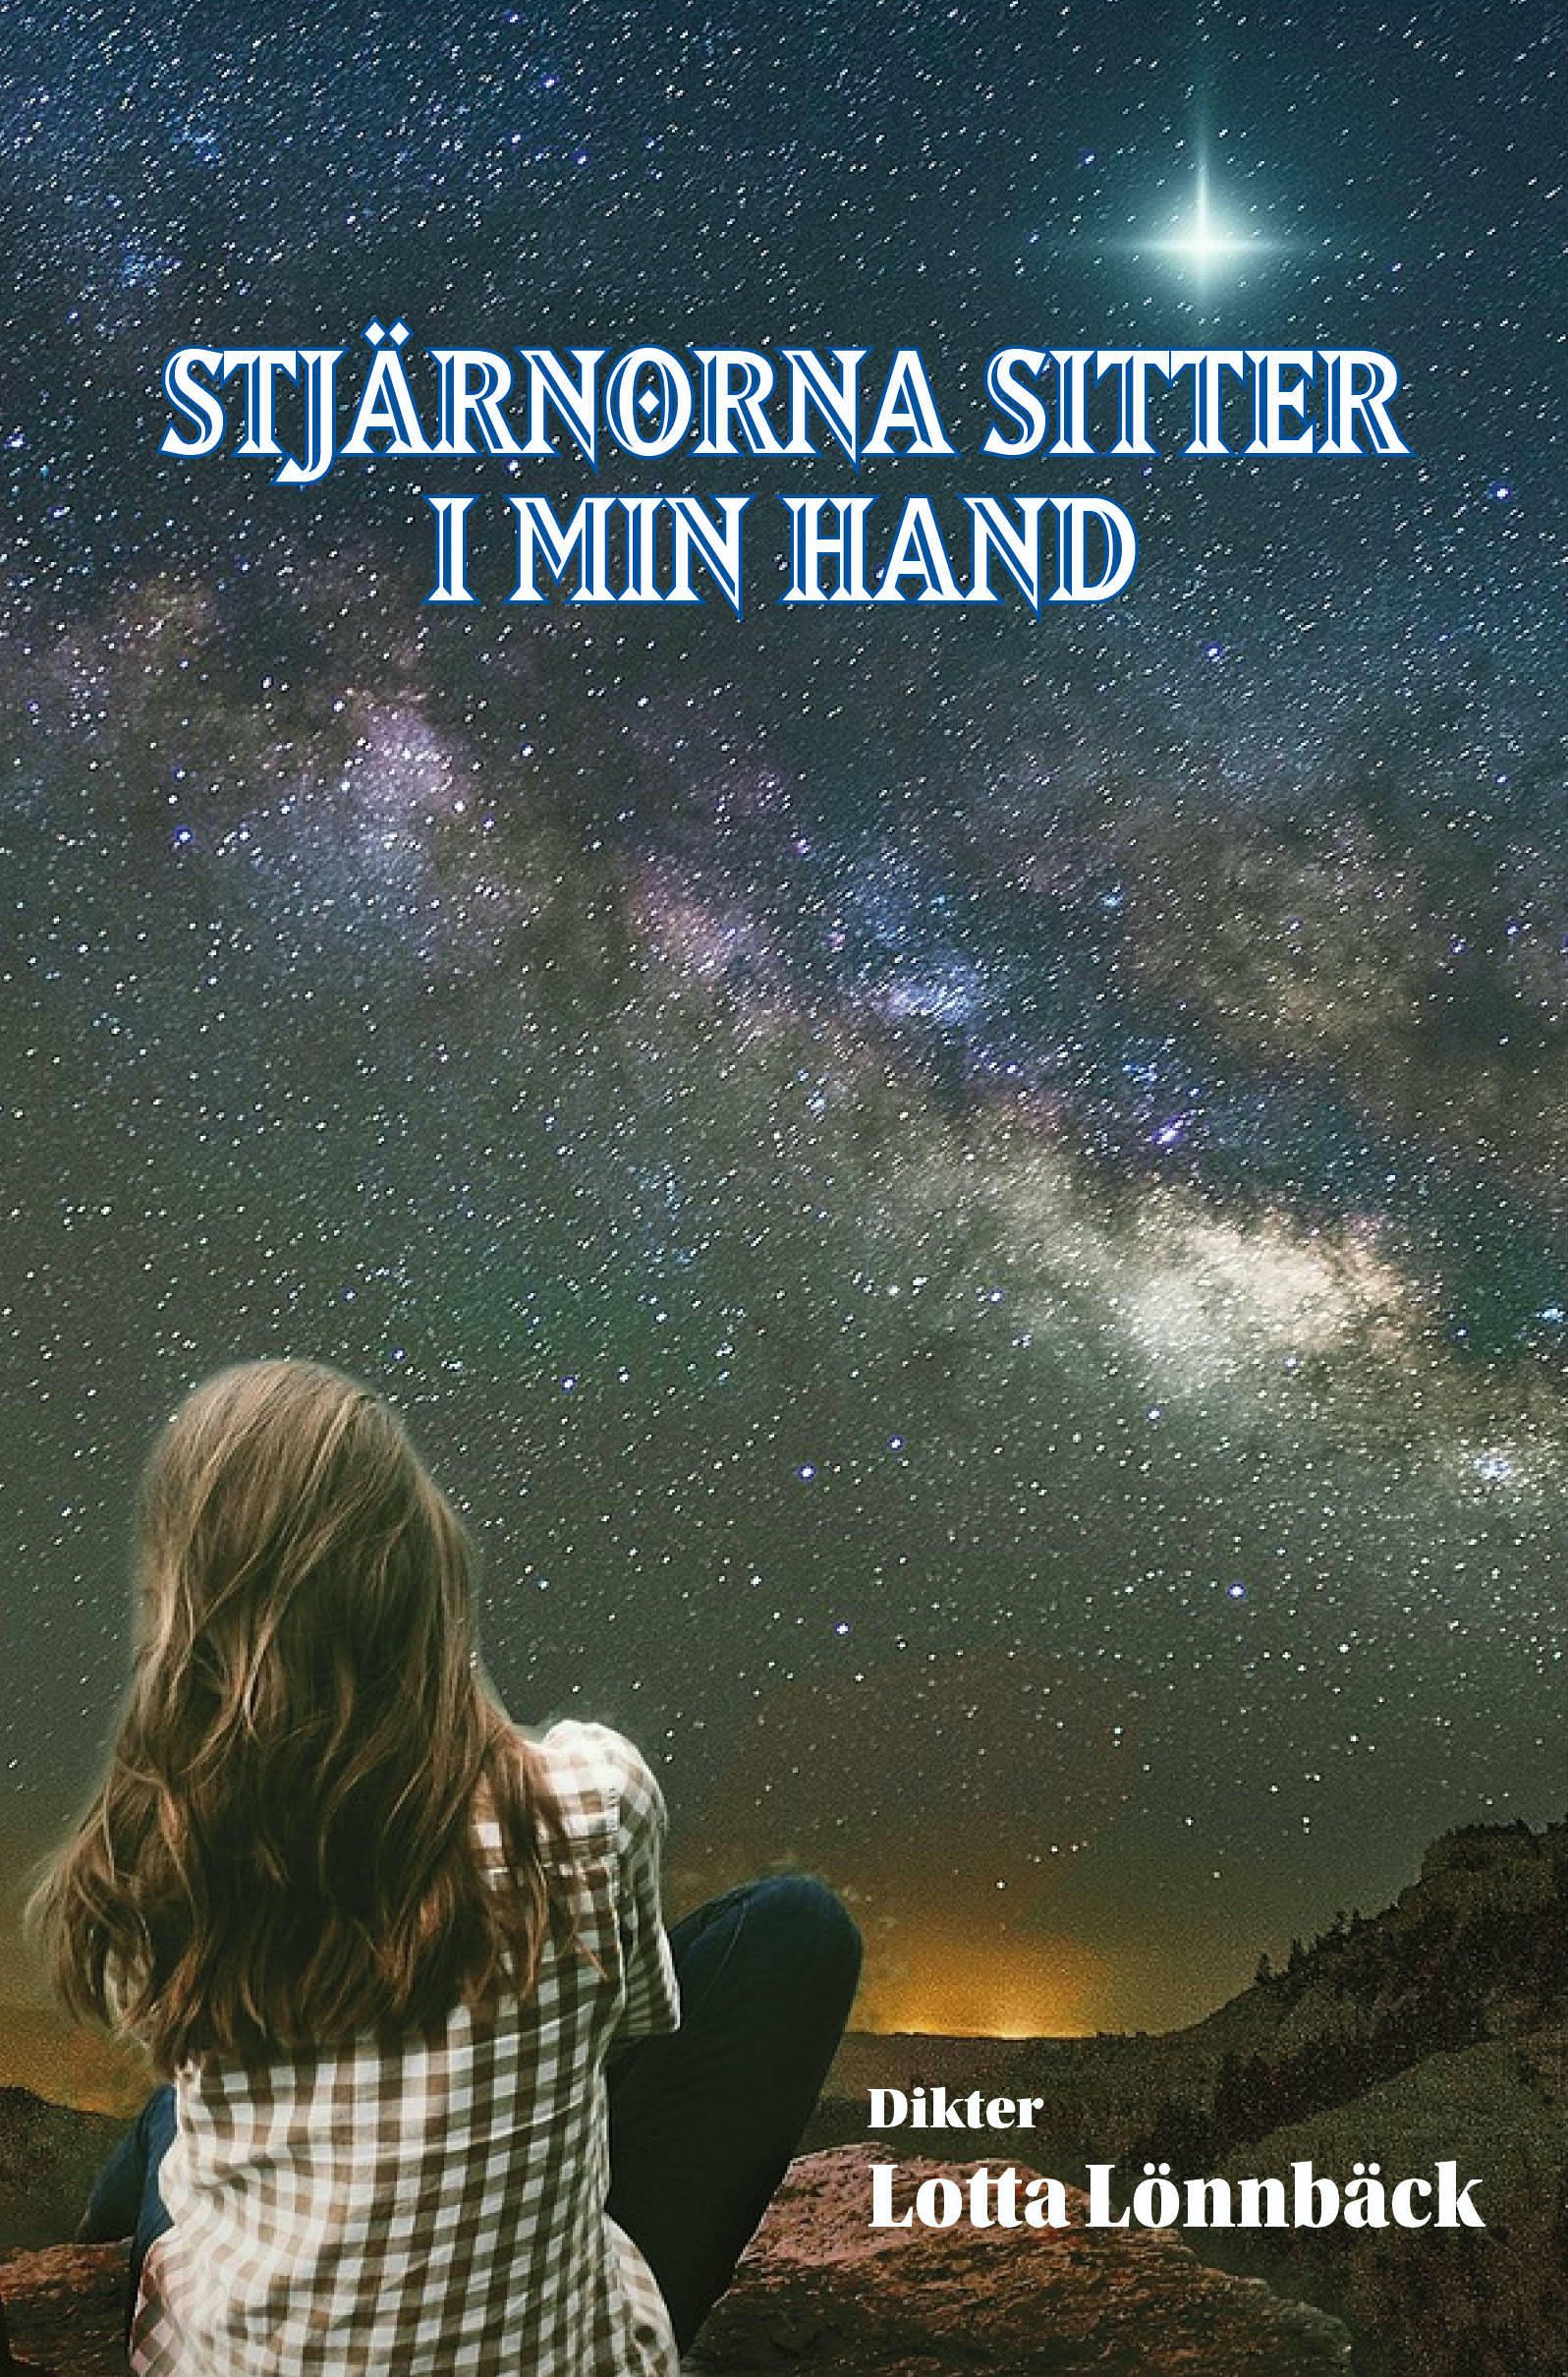 Stjärnorna sitter i min hand, eBook by Lotta Lönnbäck